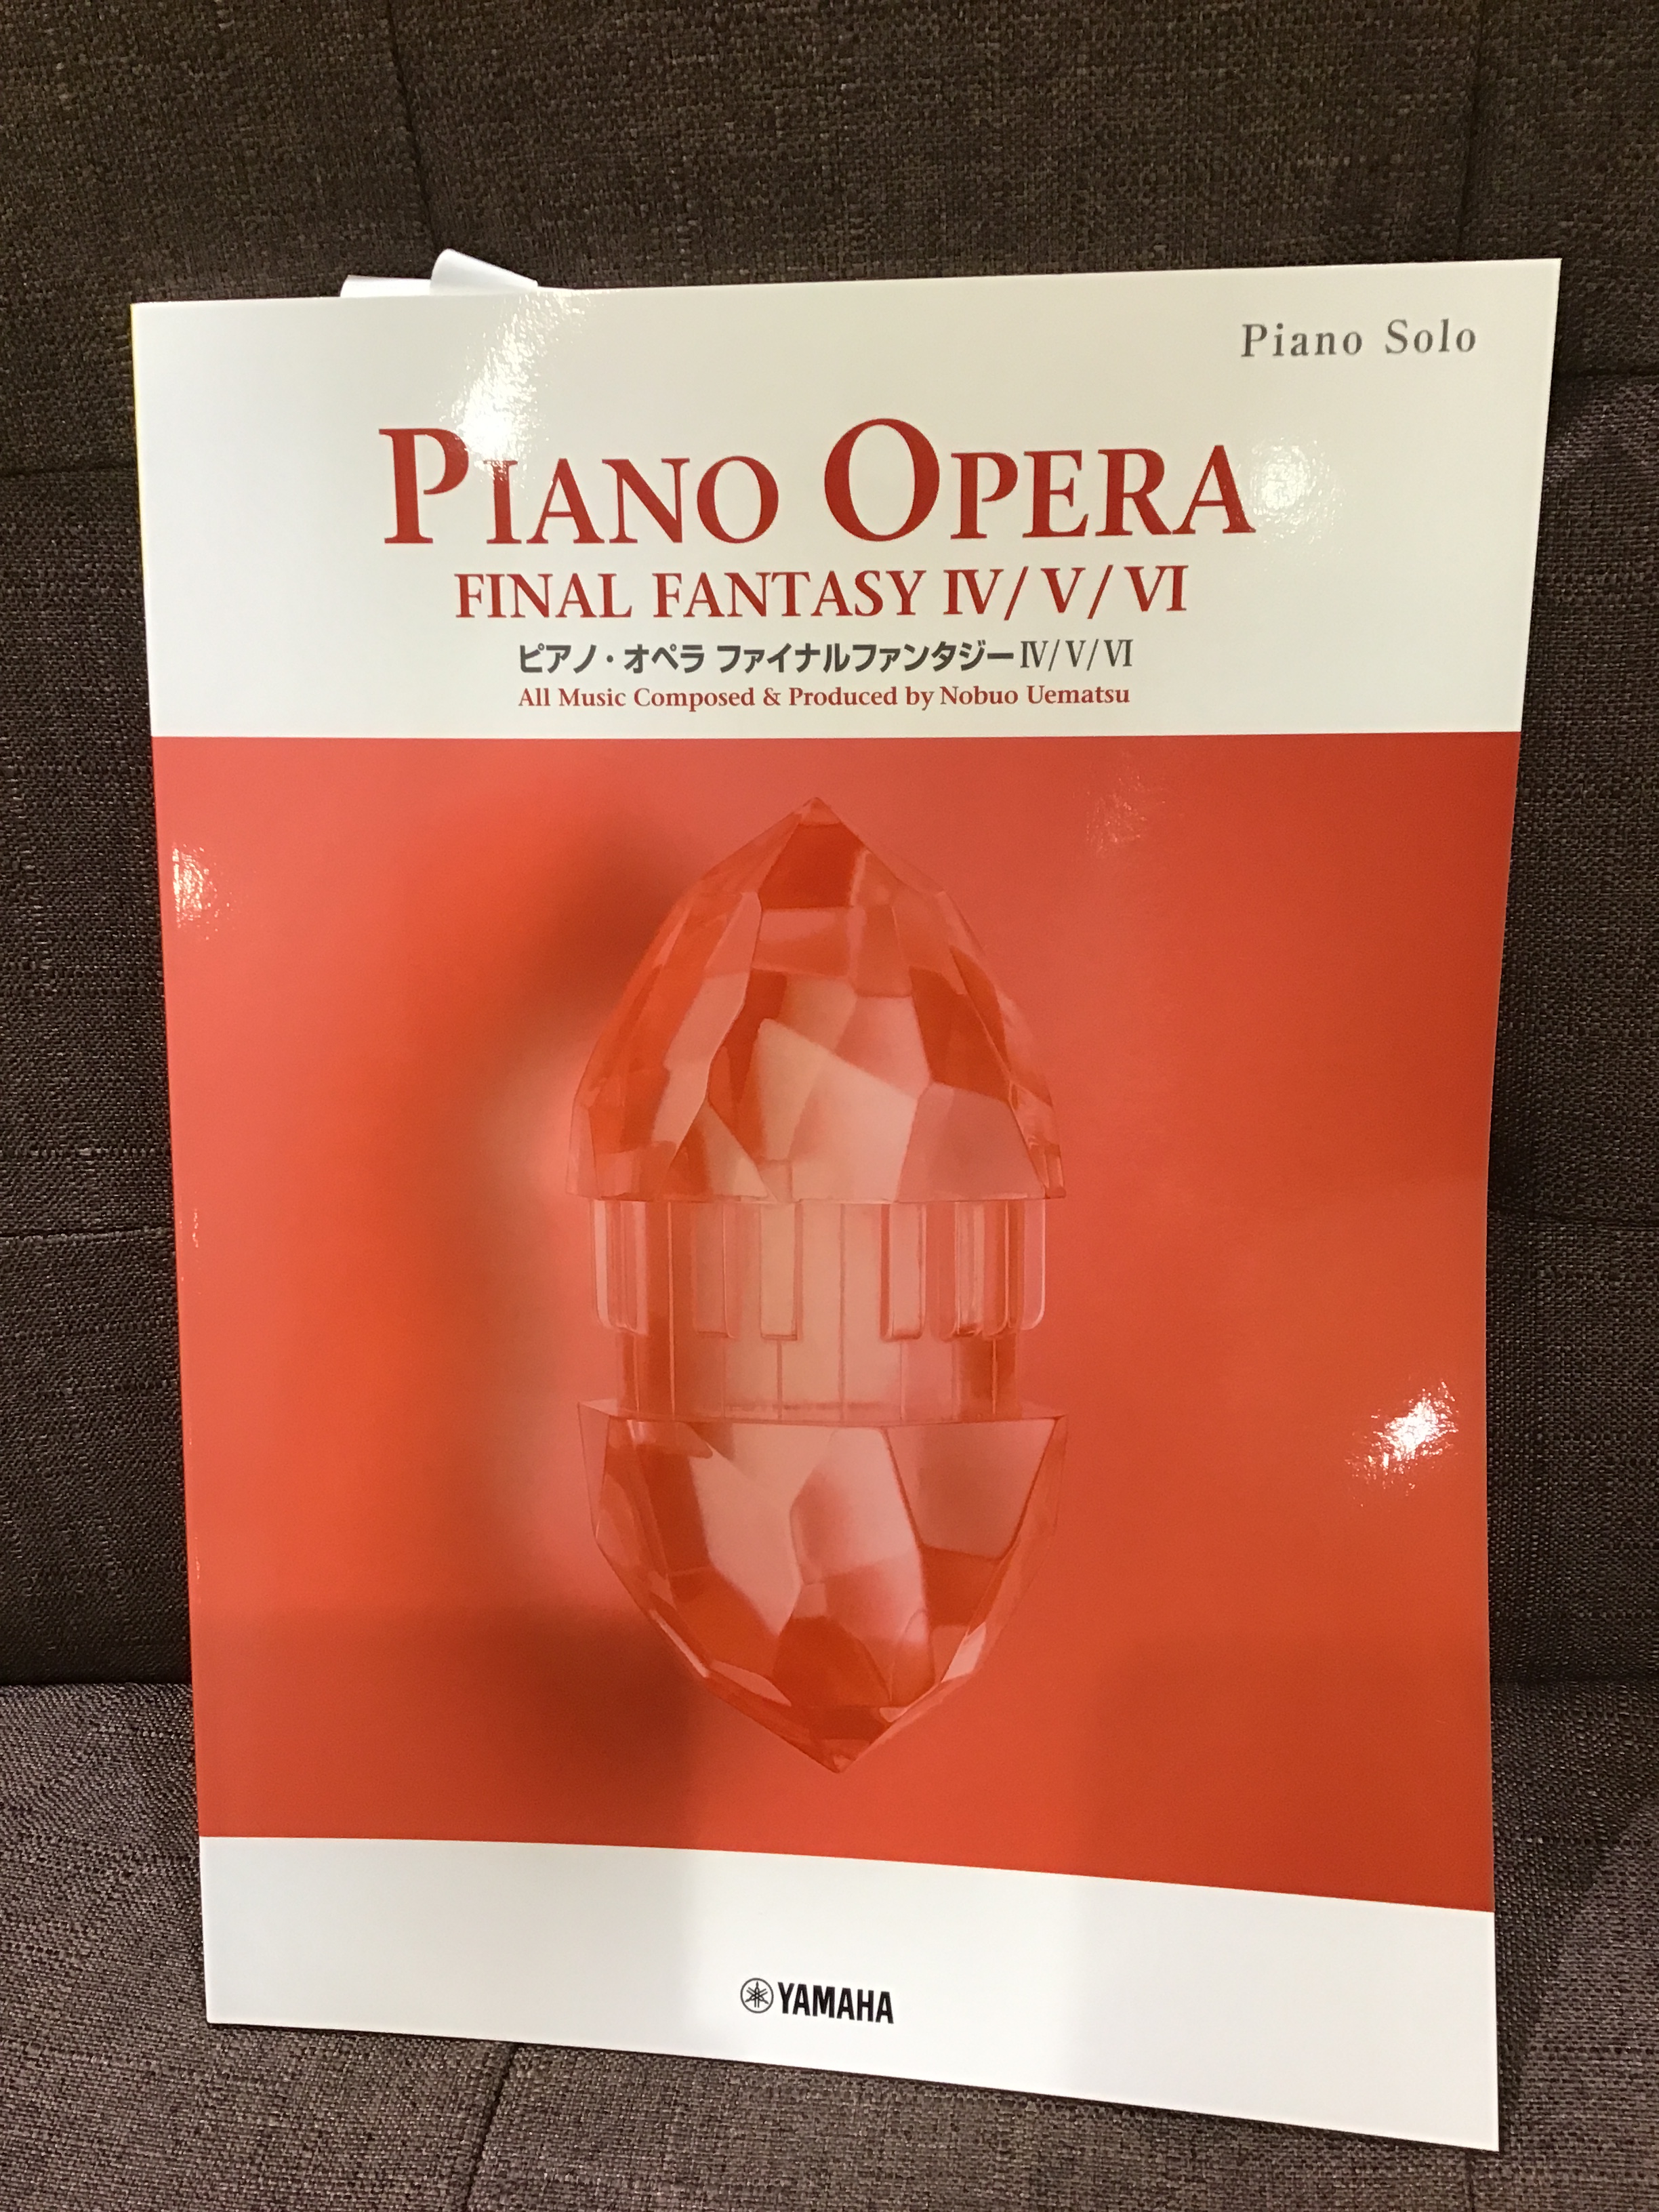 ピアノソロ 上級 ピアノ・オペラ ファイナルファンタジー VII/VIII/IX 